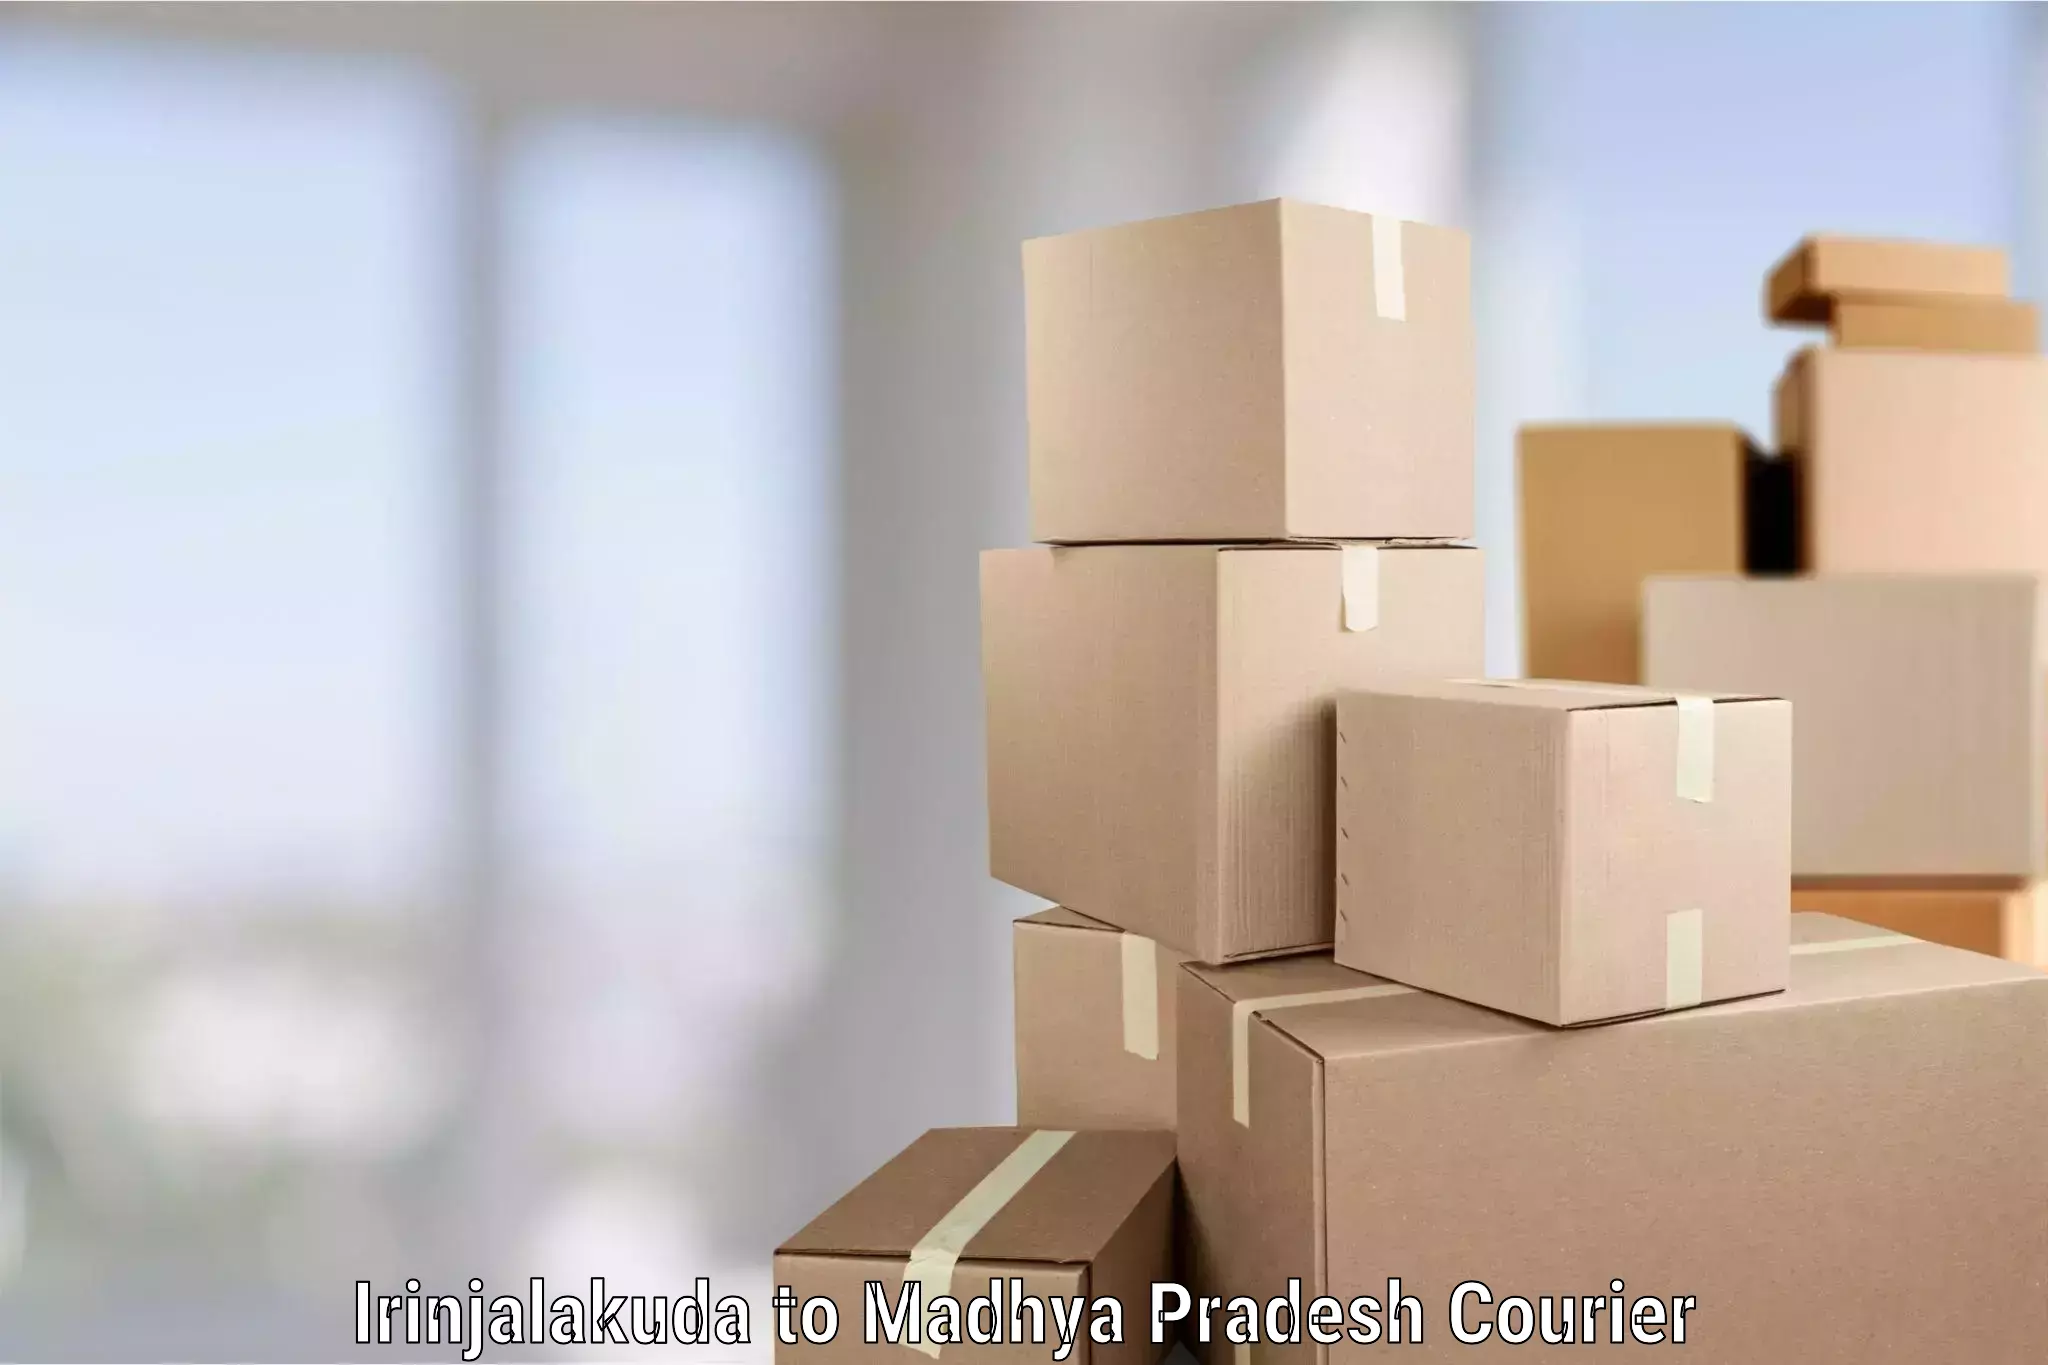 Moving and packing experts Irinjalakuda to Madhya Pradesh